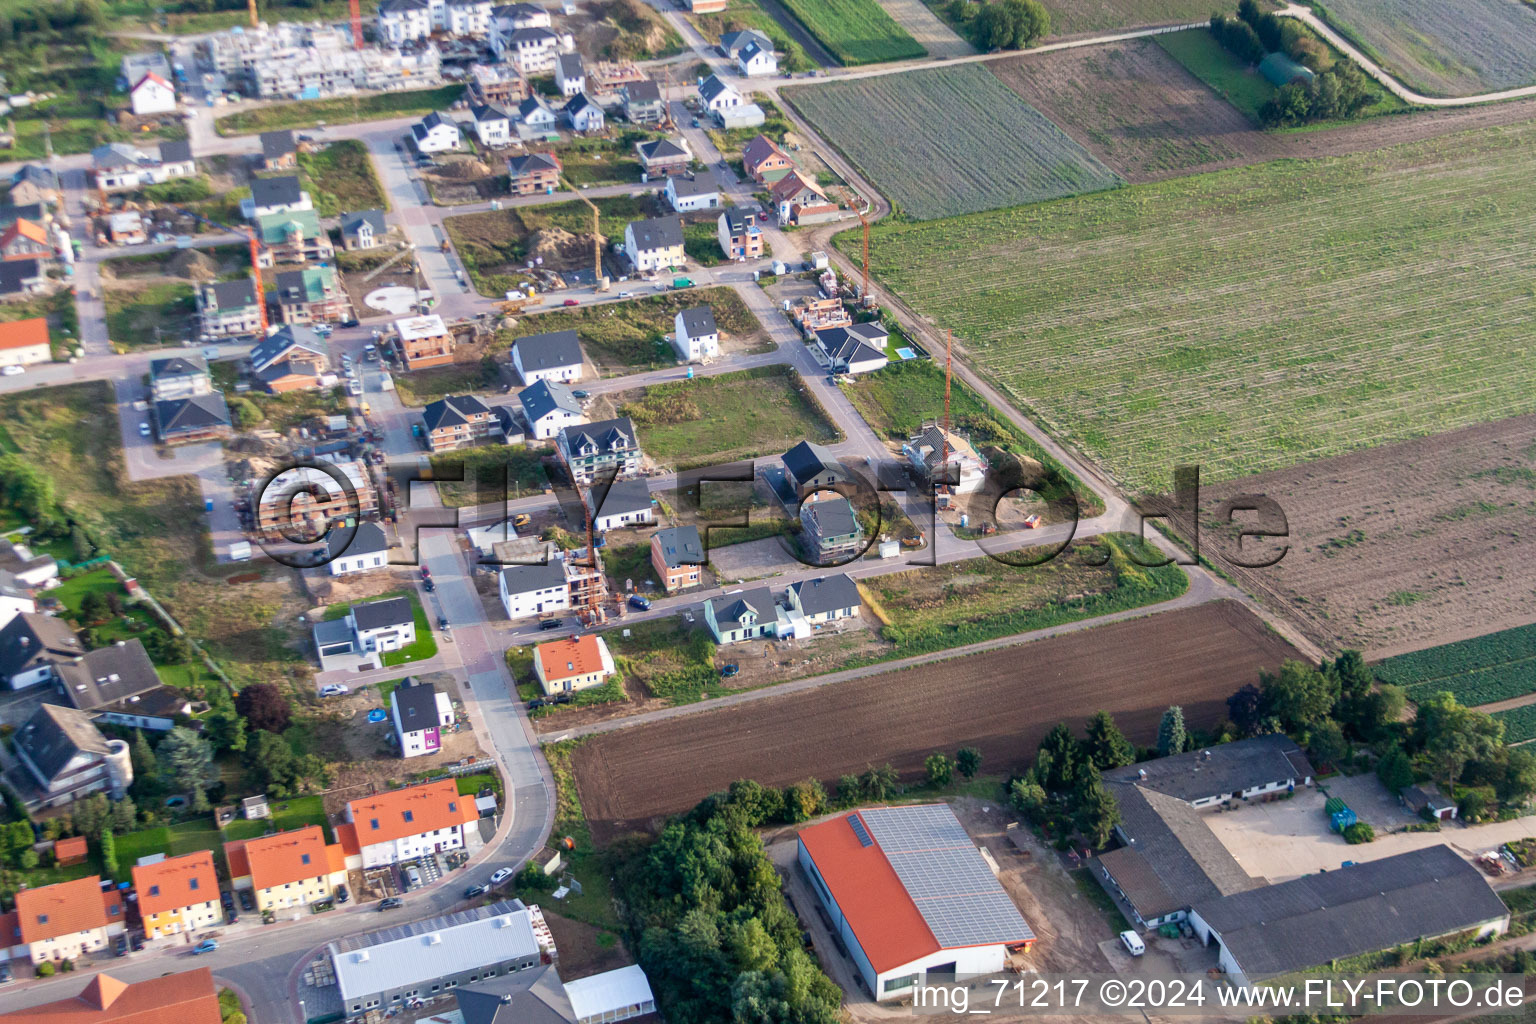 Aerial view of New development area Betheny-Allee in the district Schauernheim in Dannstadt-Schauernheim in the state Rhineland-Palatinate, Germany